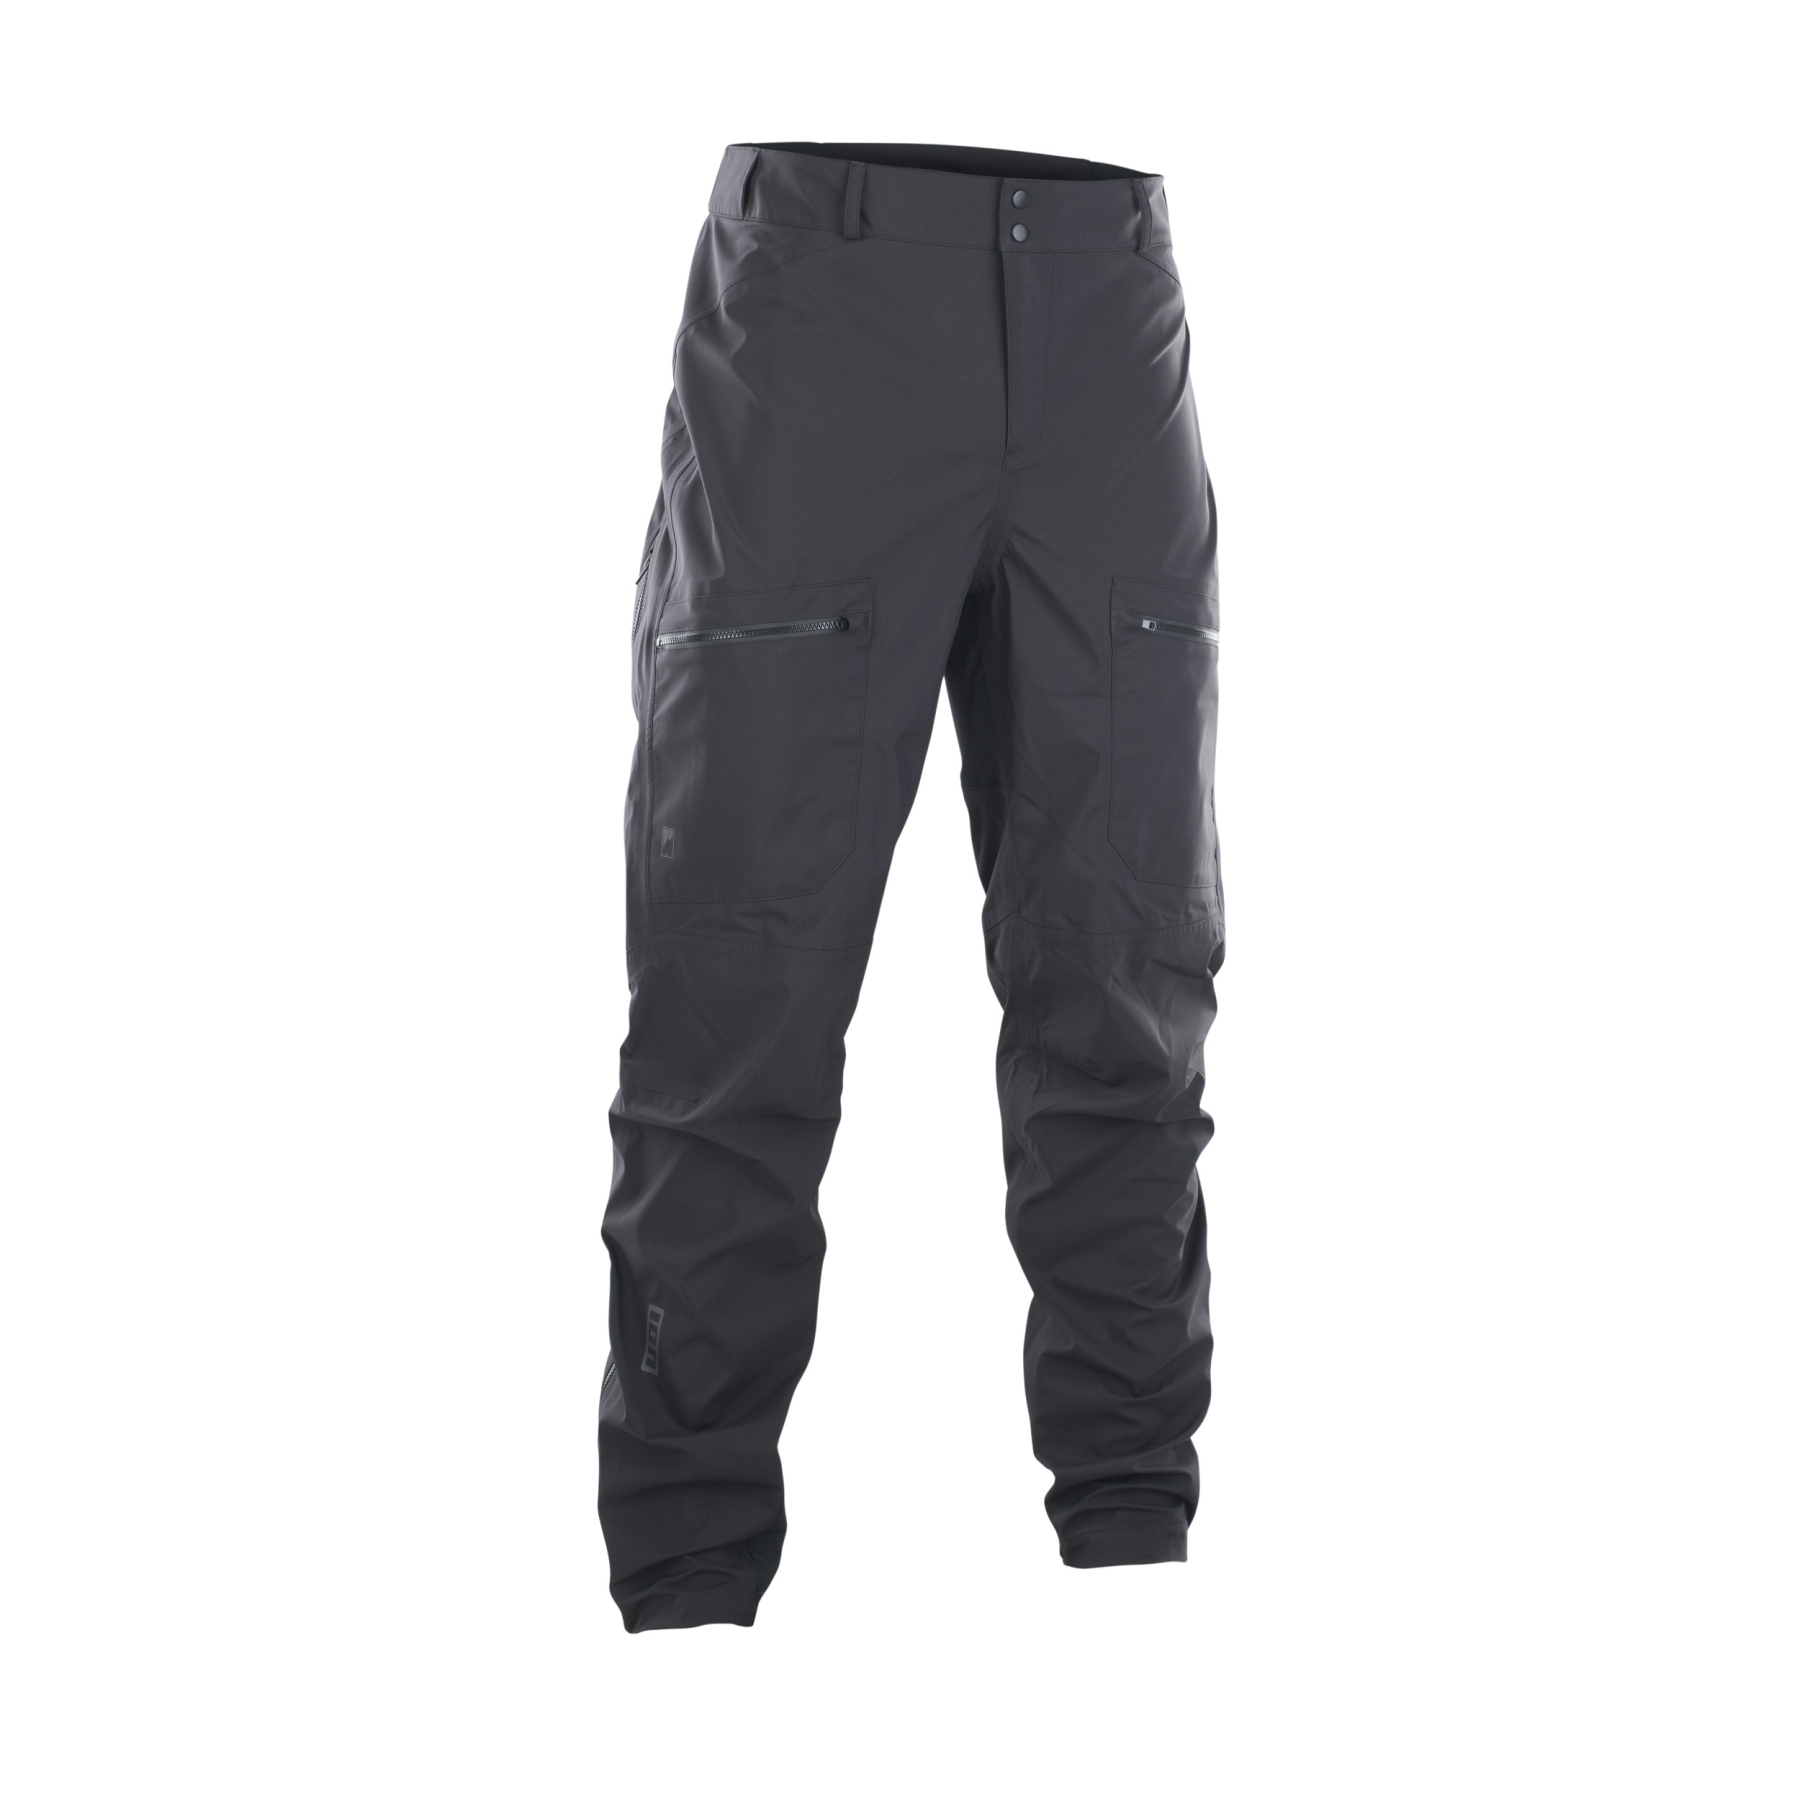 Foto de ION Bike Outerwear 3 Capas Pantalones Impermeables - Shelter - Negro